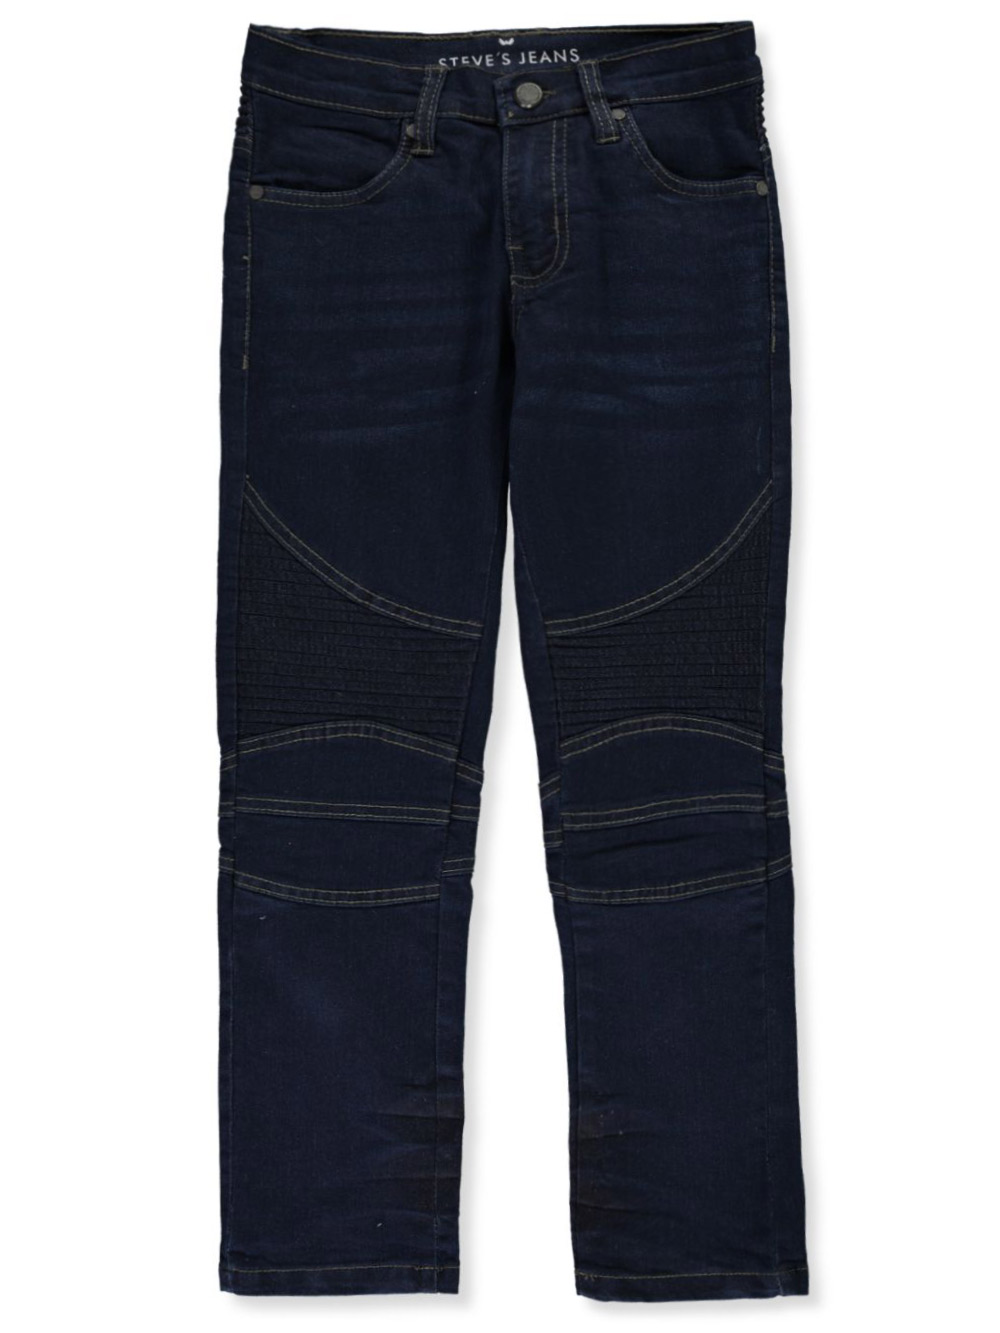 steve's jeans clothing